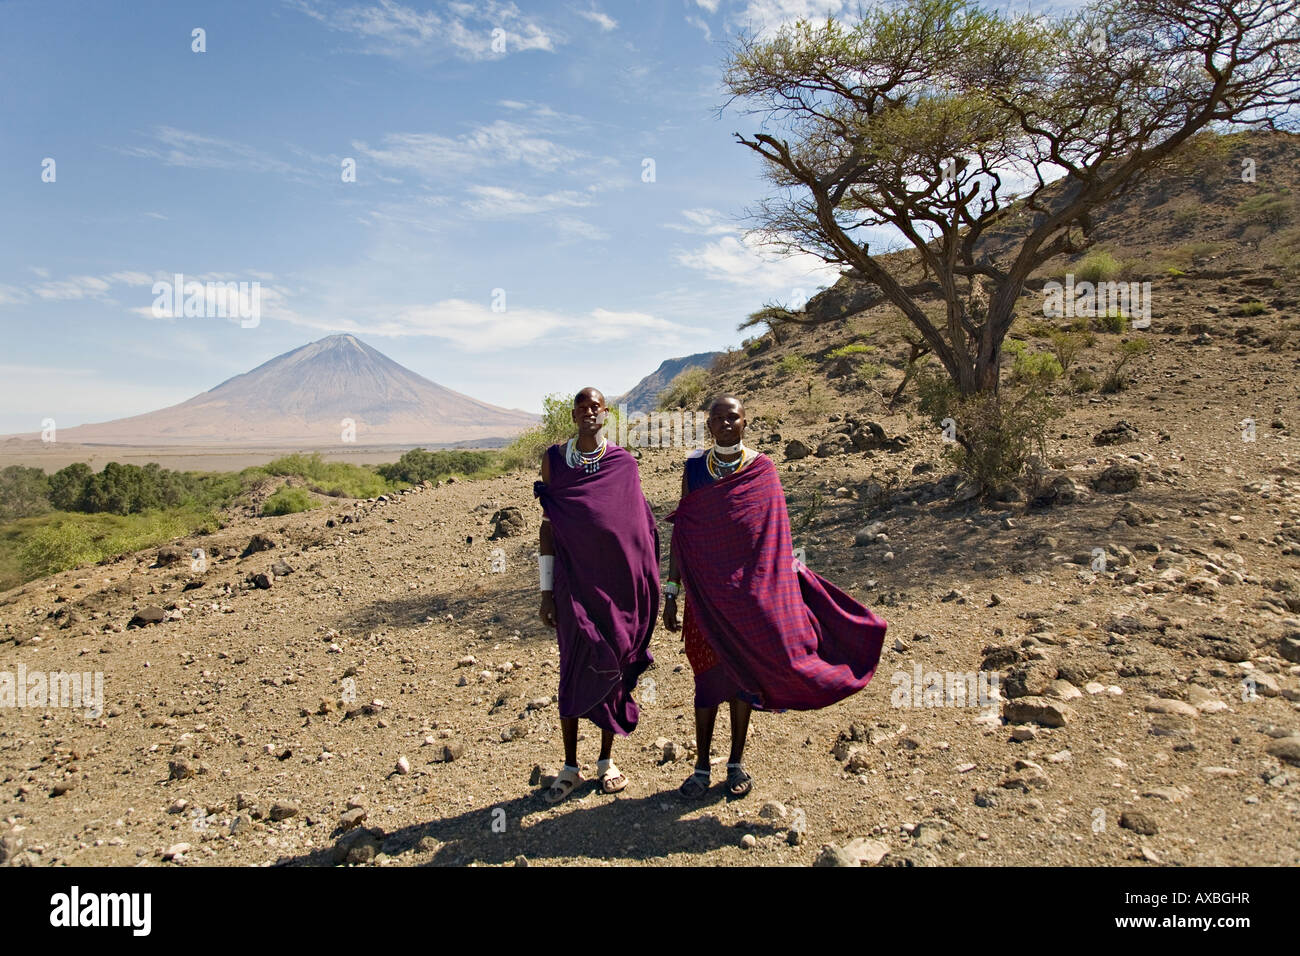 Masai men, Ol' Donyo Lengai volcano visible in a distance, Tanzania, Africa Stock Photo